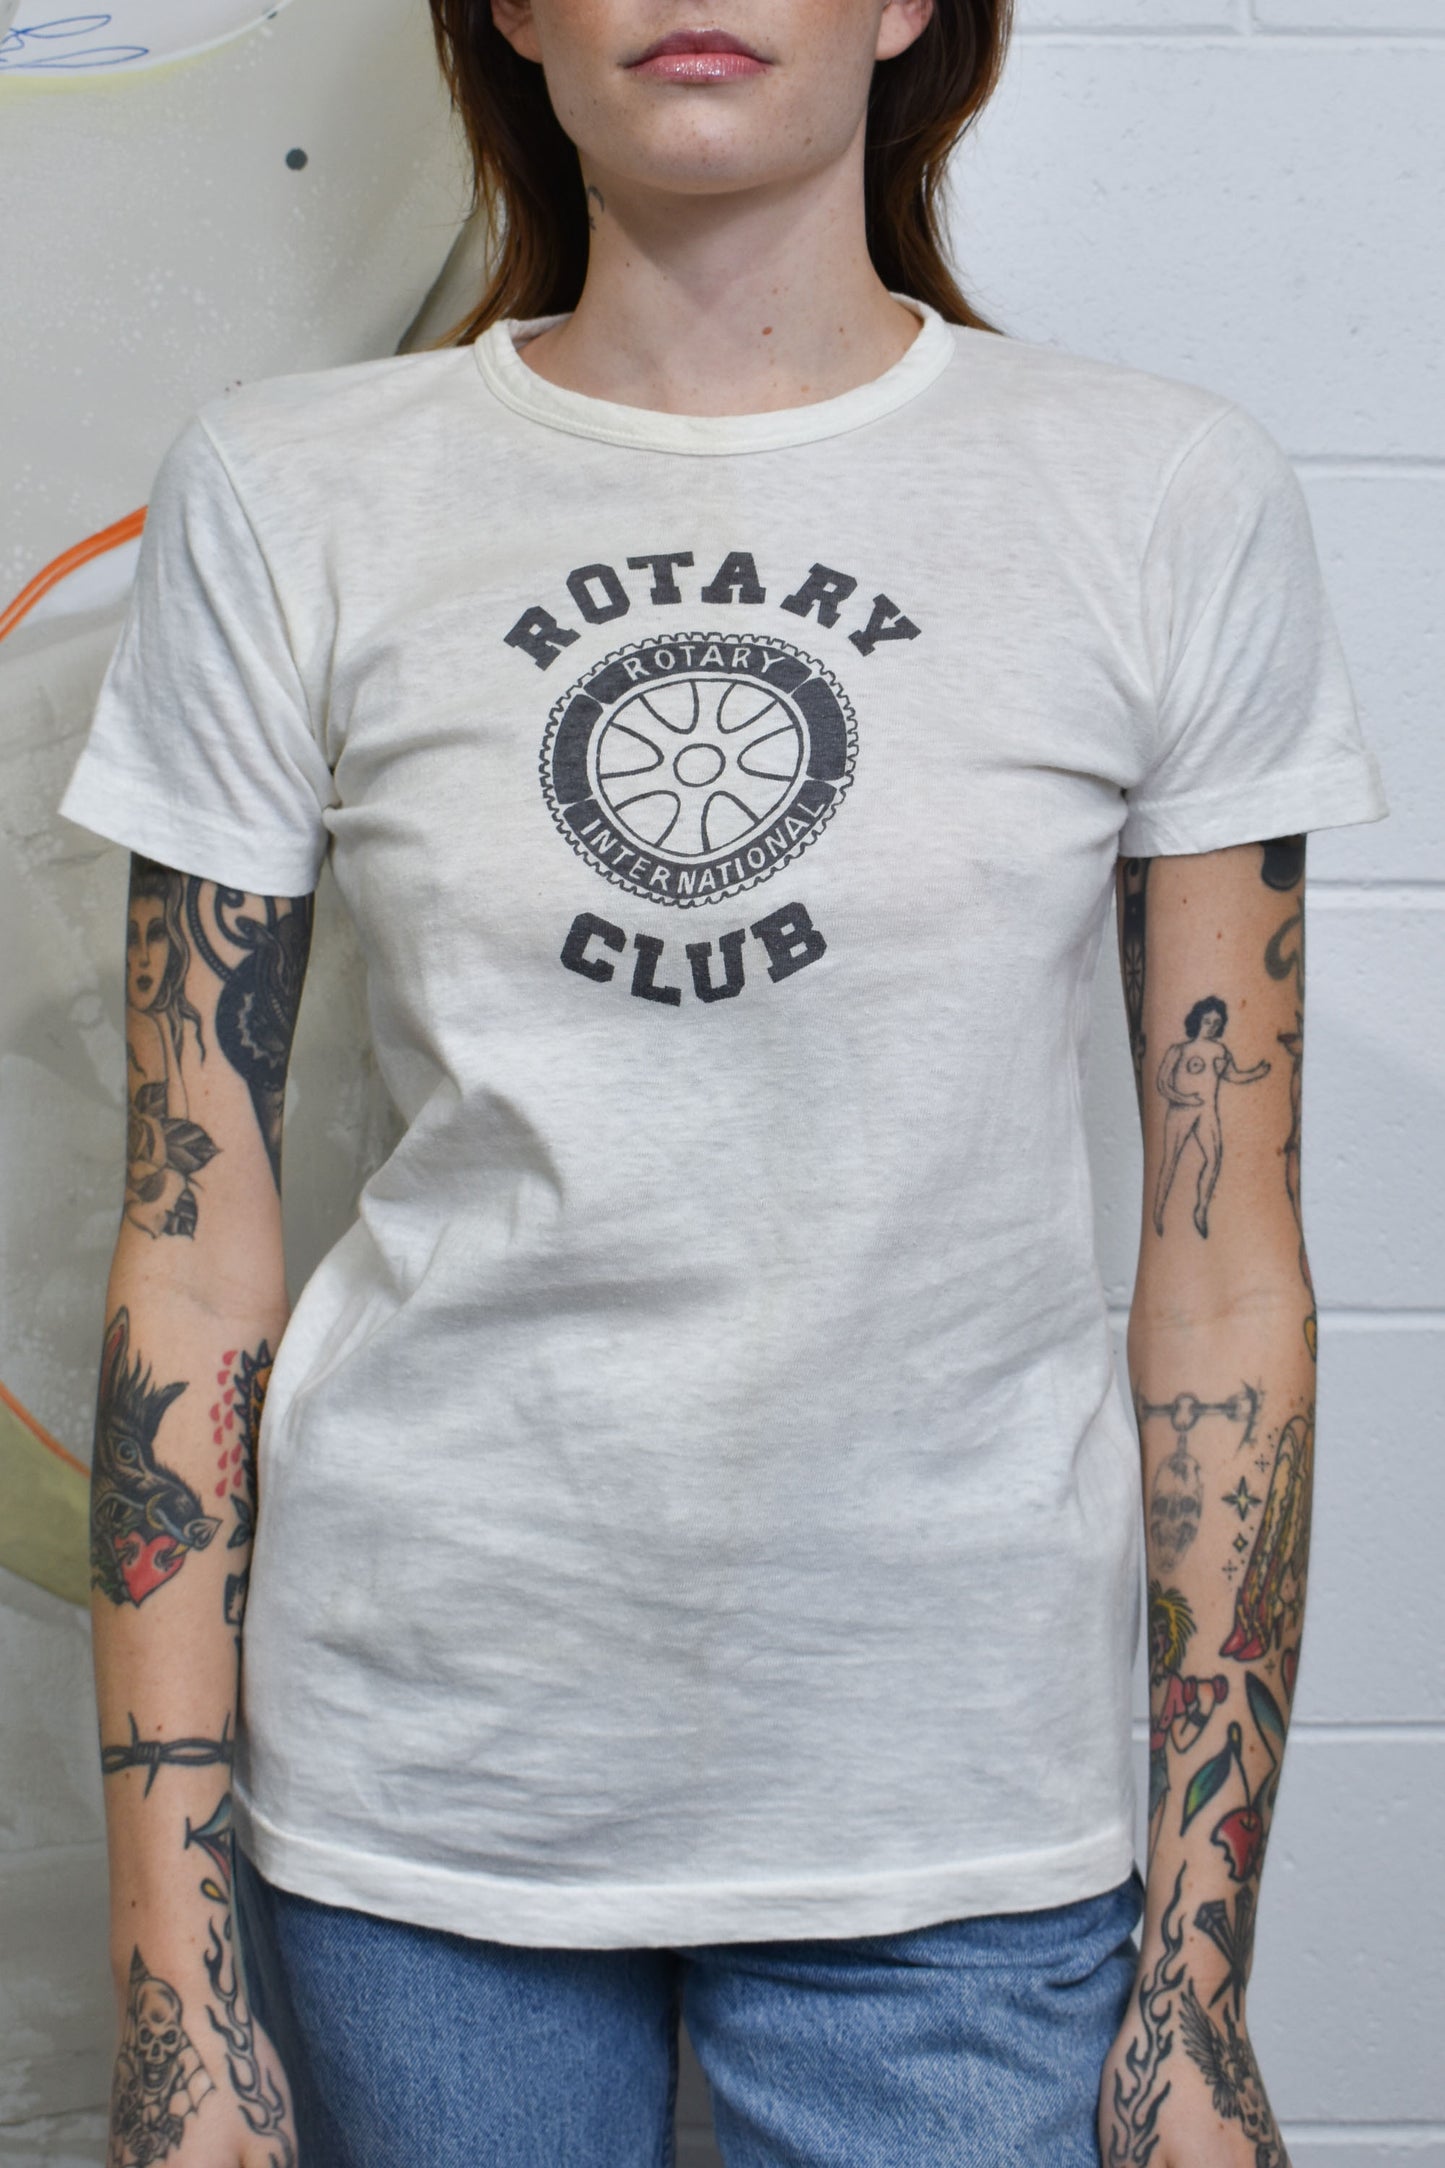 Vintage 1950's "Rotary Club International" T-Shirt